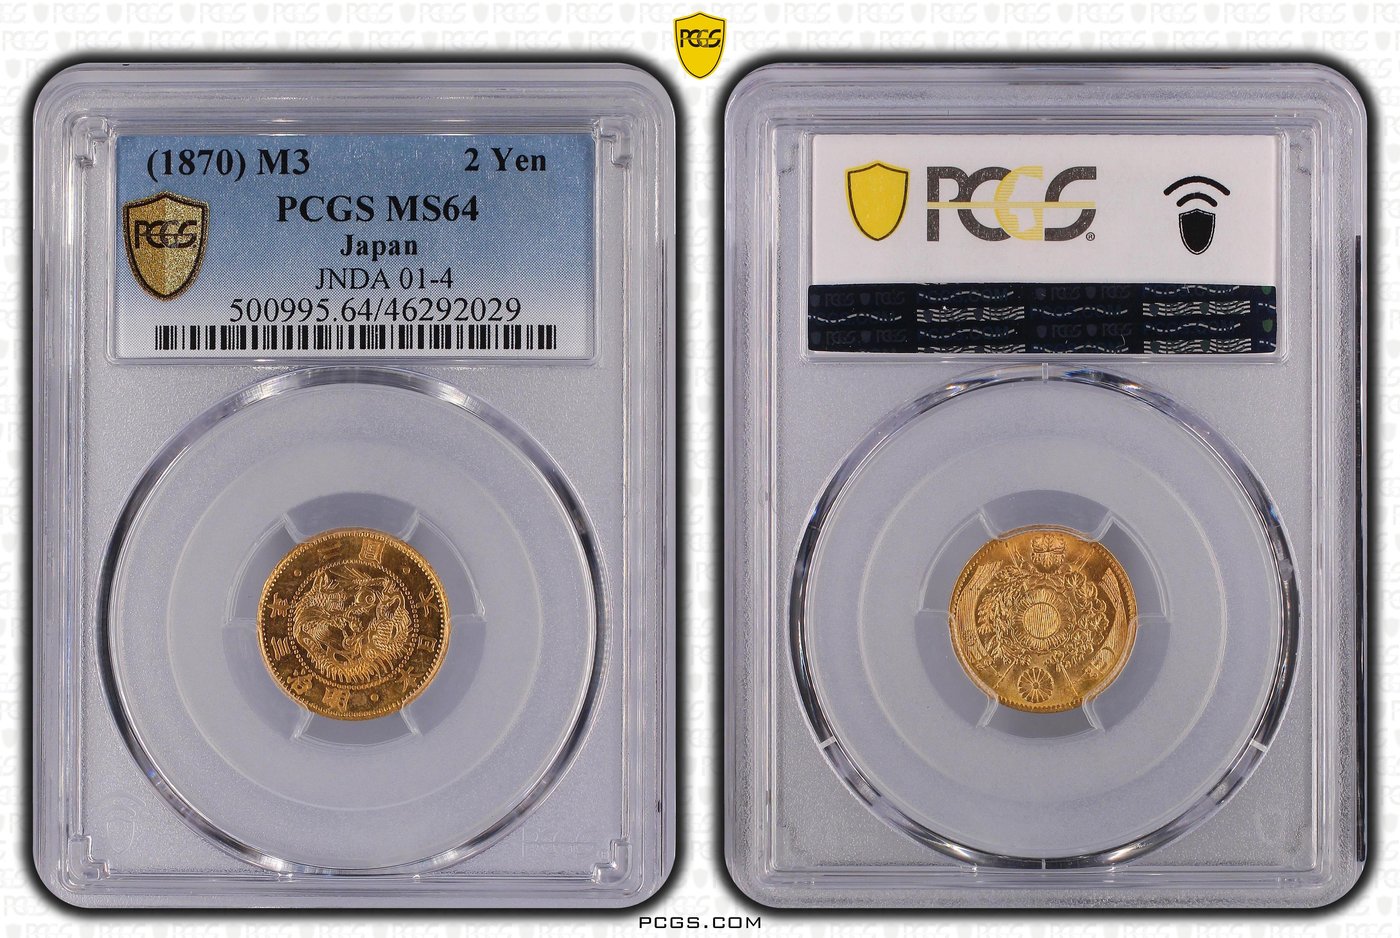 明治三年二圓金幣 PCGS MS64 有龍圖案日本高分金幣 極度稀少 [認證編號46292029] 【和美郵幣社】